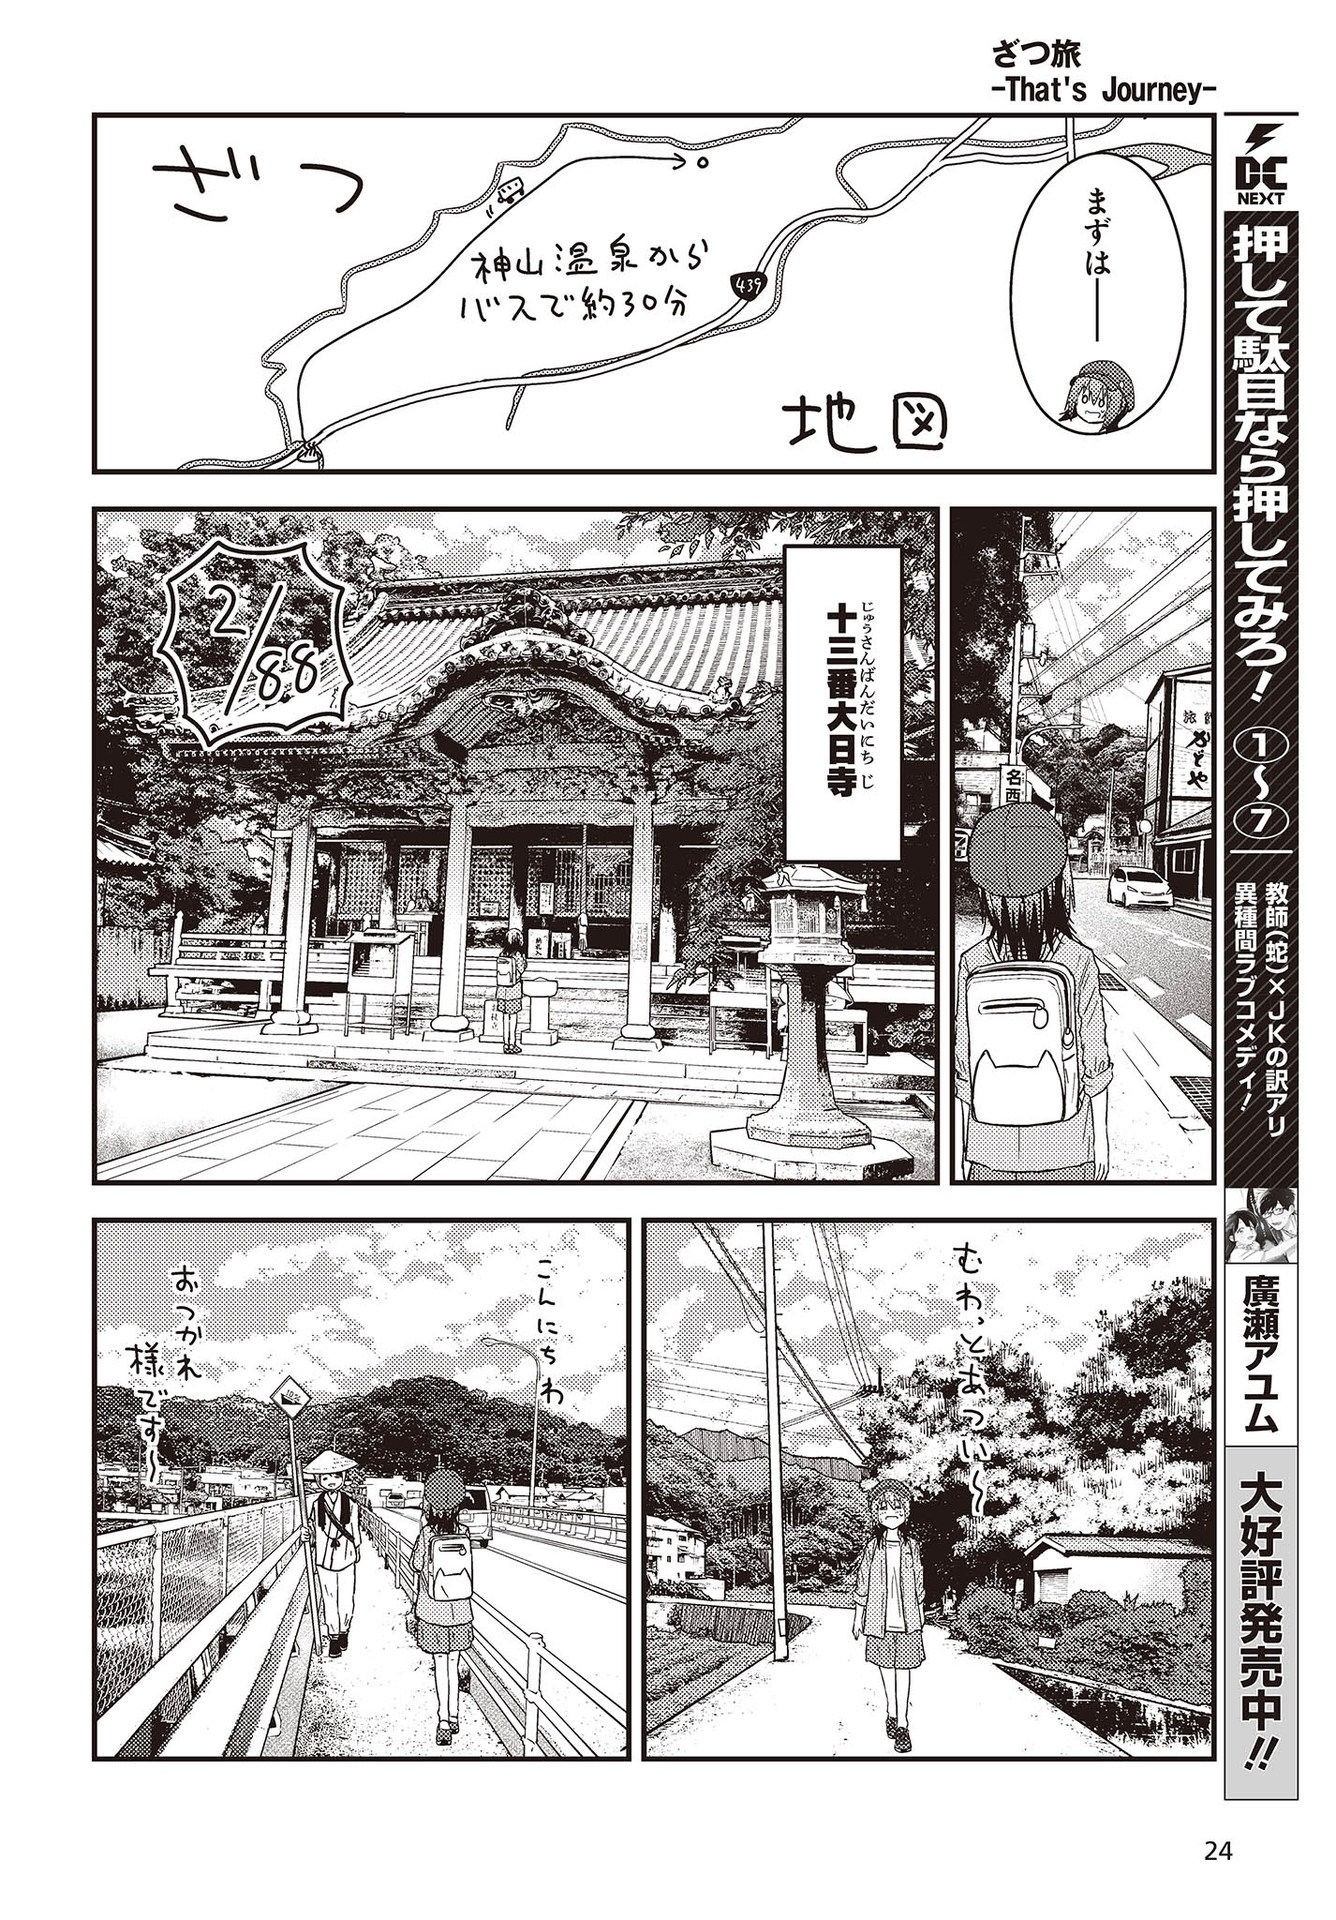 ざつ旅-That’s Journey- 第26.3話 - Page 18